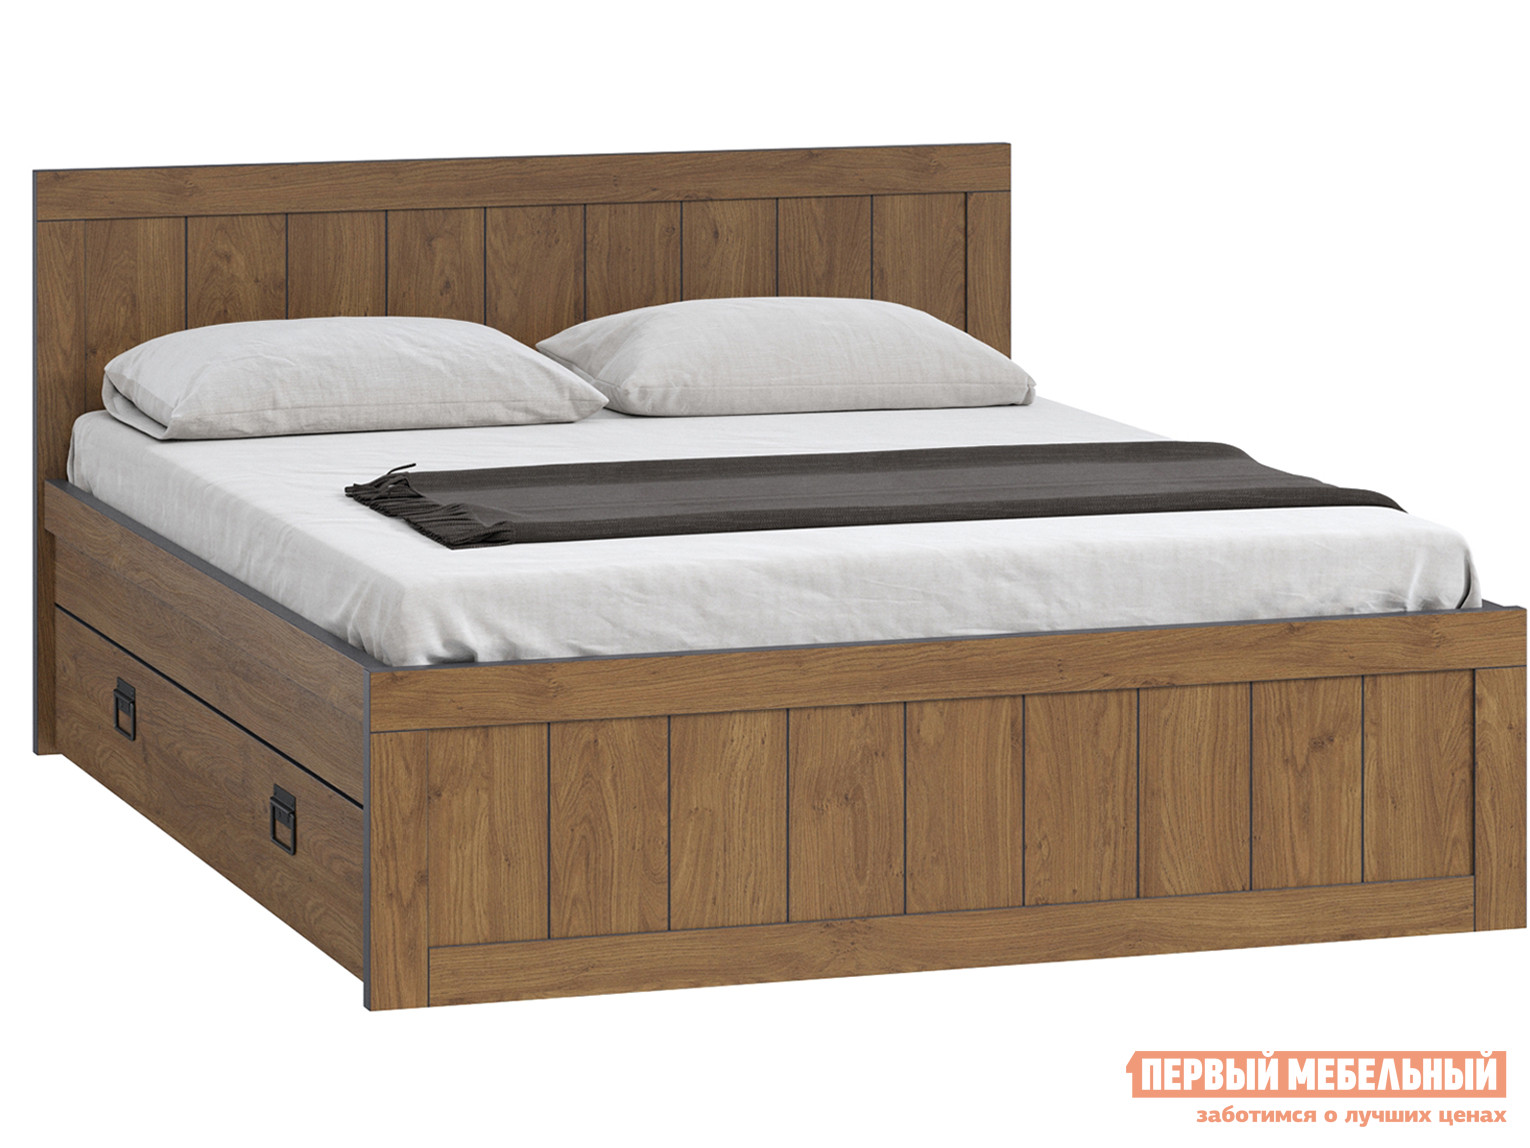 Woodcraft кровать двуспальная лофт 160x200